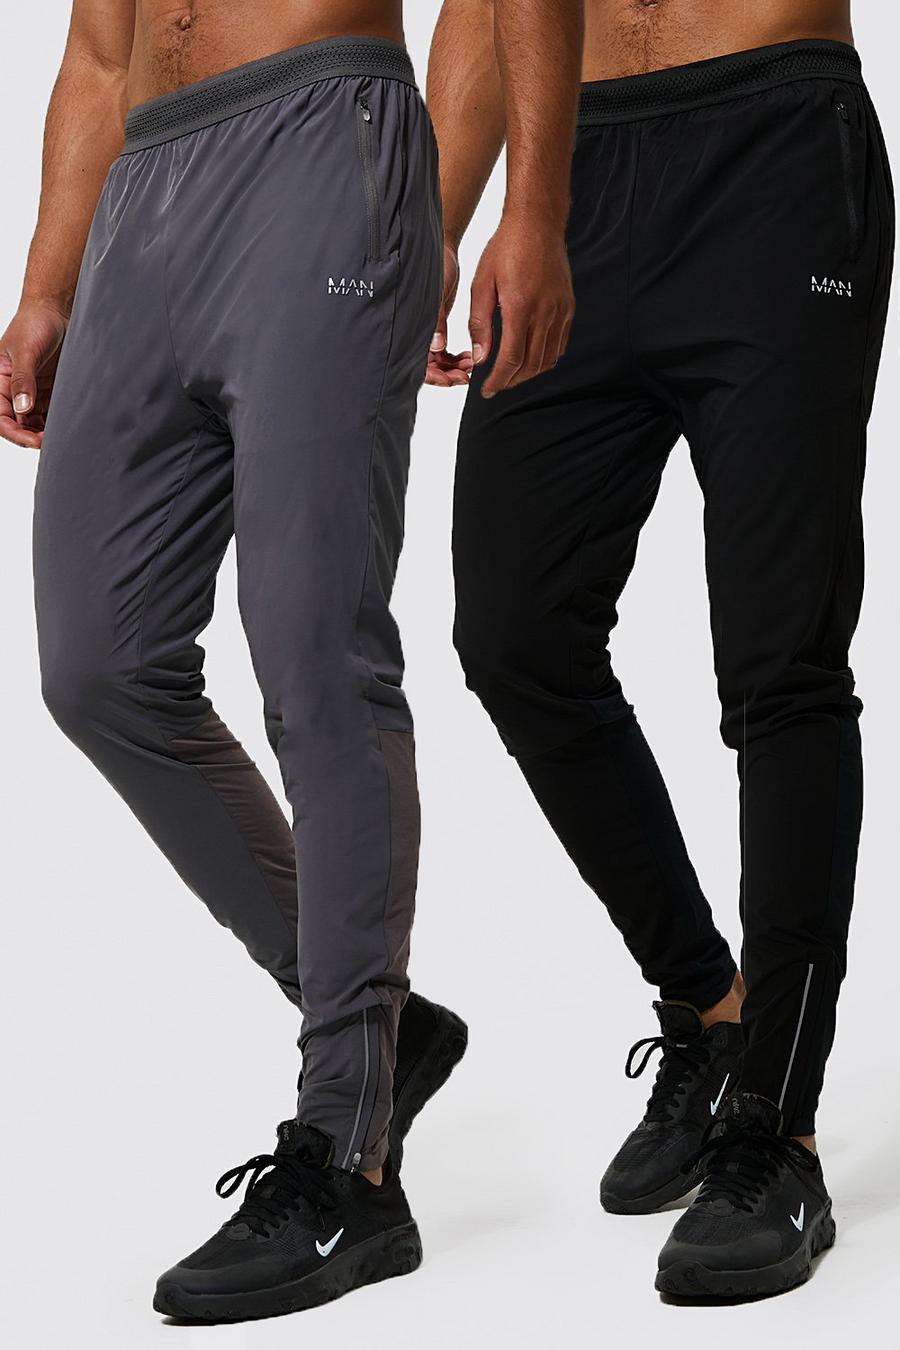 שחור black מארז 2 זוגות מכנסי ריצה ספורטיביים קלילים לחדר הכושר Man, לגברים גבוהים